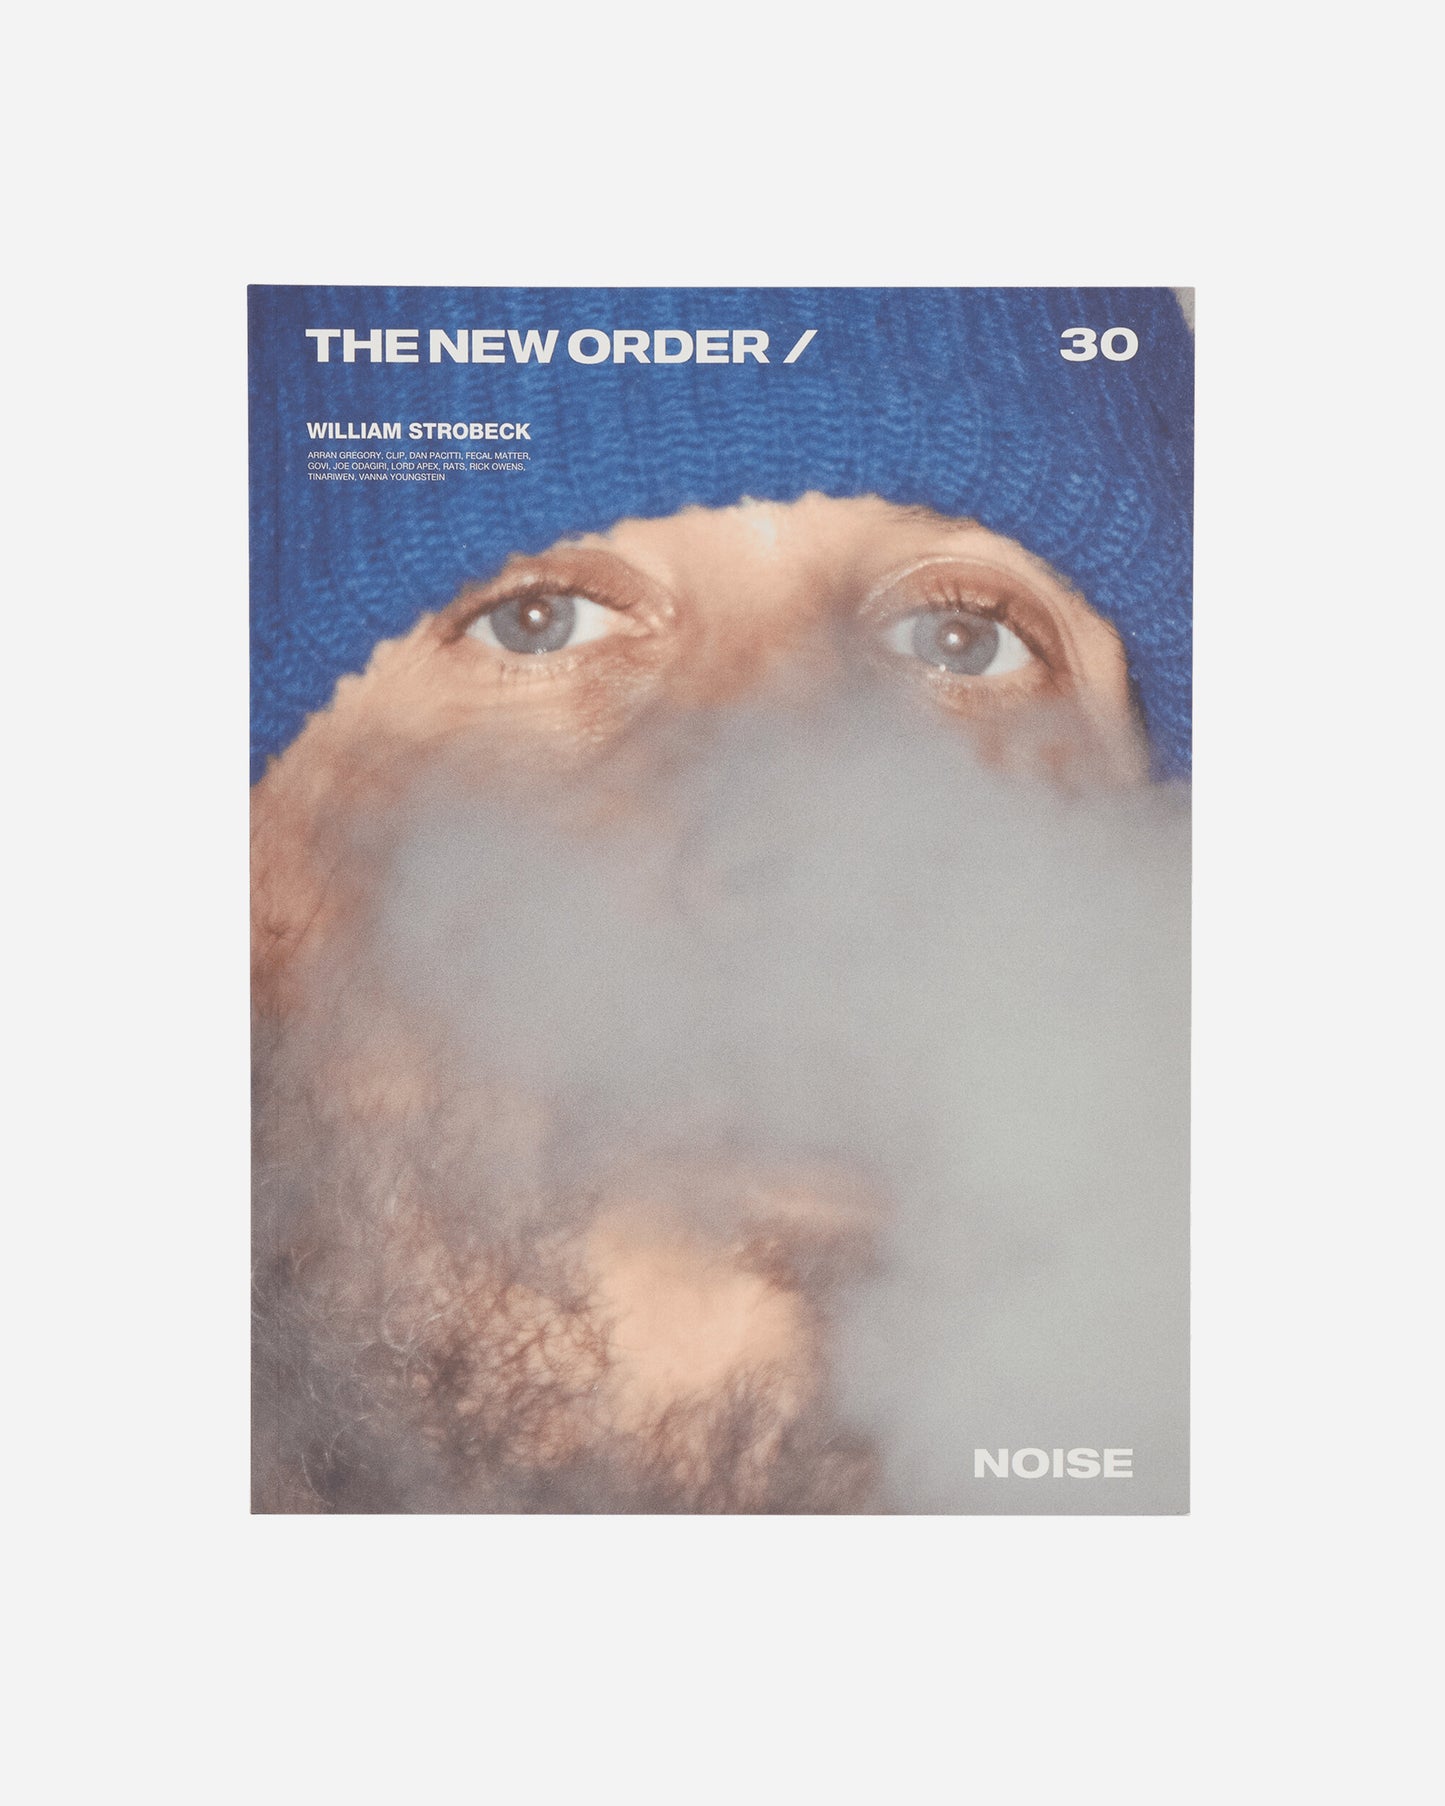 THE NEW ORDER Magazine The New Order Magazine Issue 30- Cover 1 Multi Books and Magazines Magazines AB6852 MULTI2